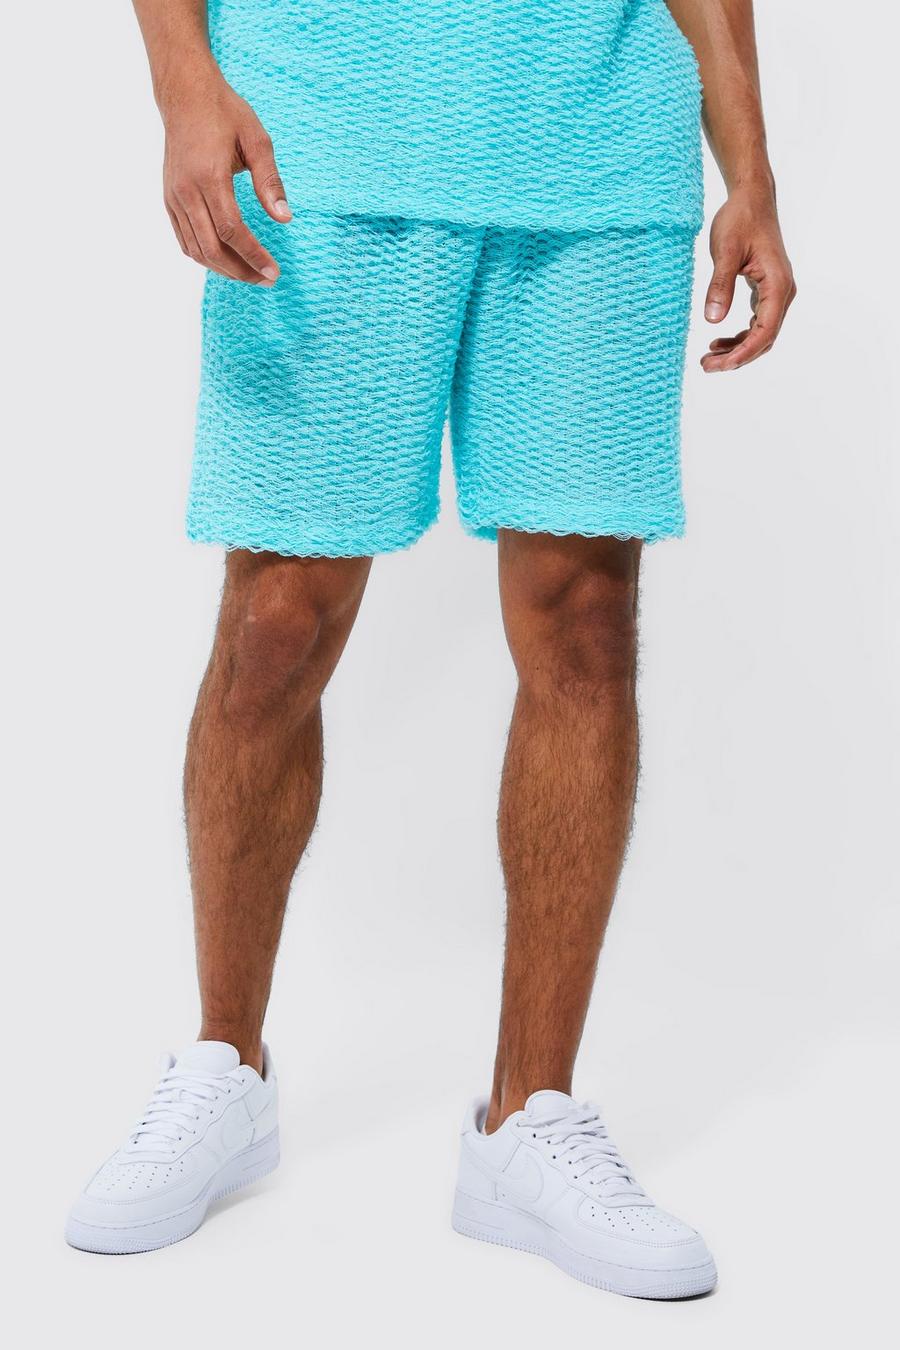 Lockere mittellange strukturierte Shorts mit Fransen, Aqua blue